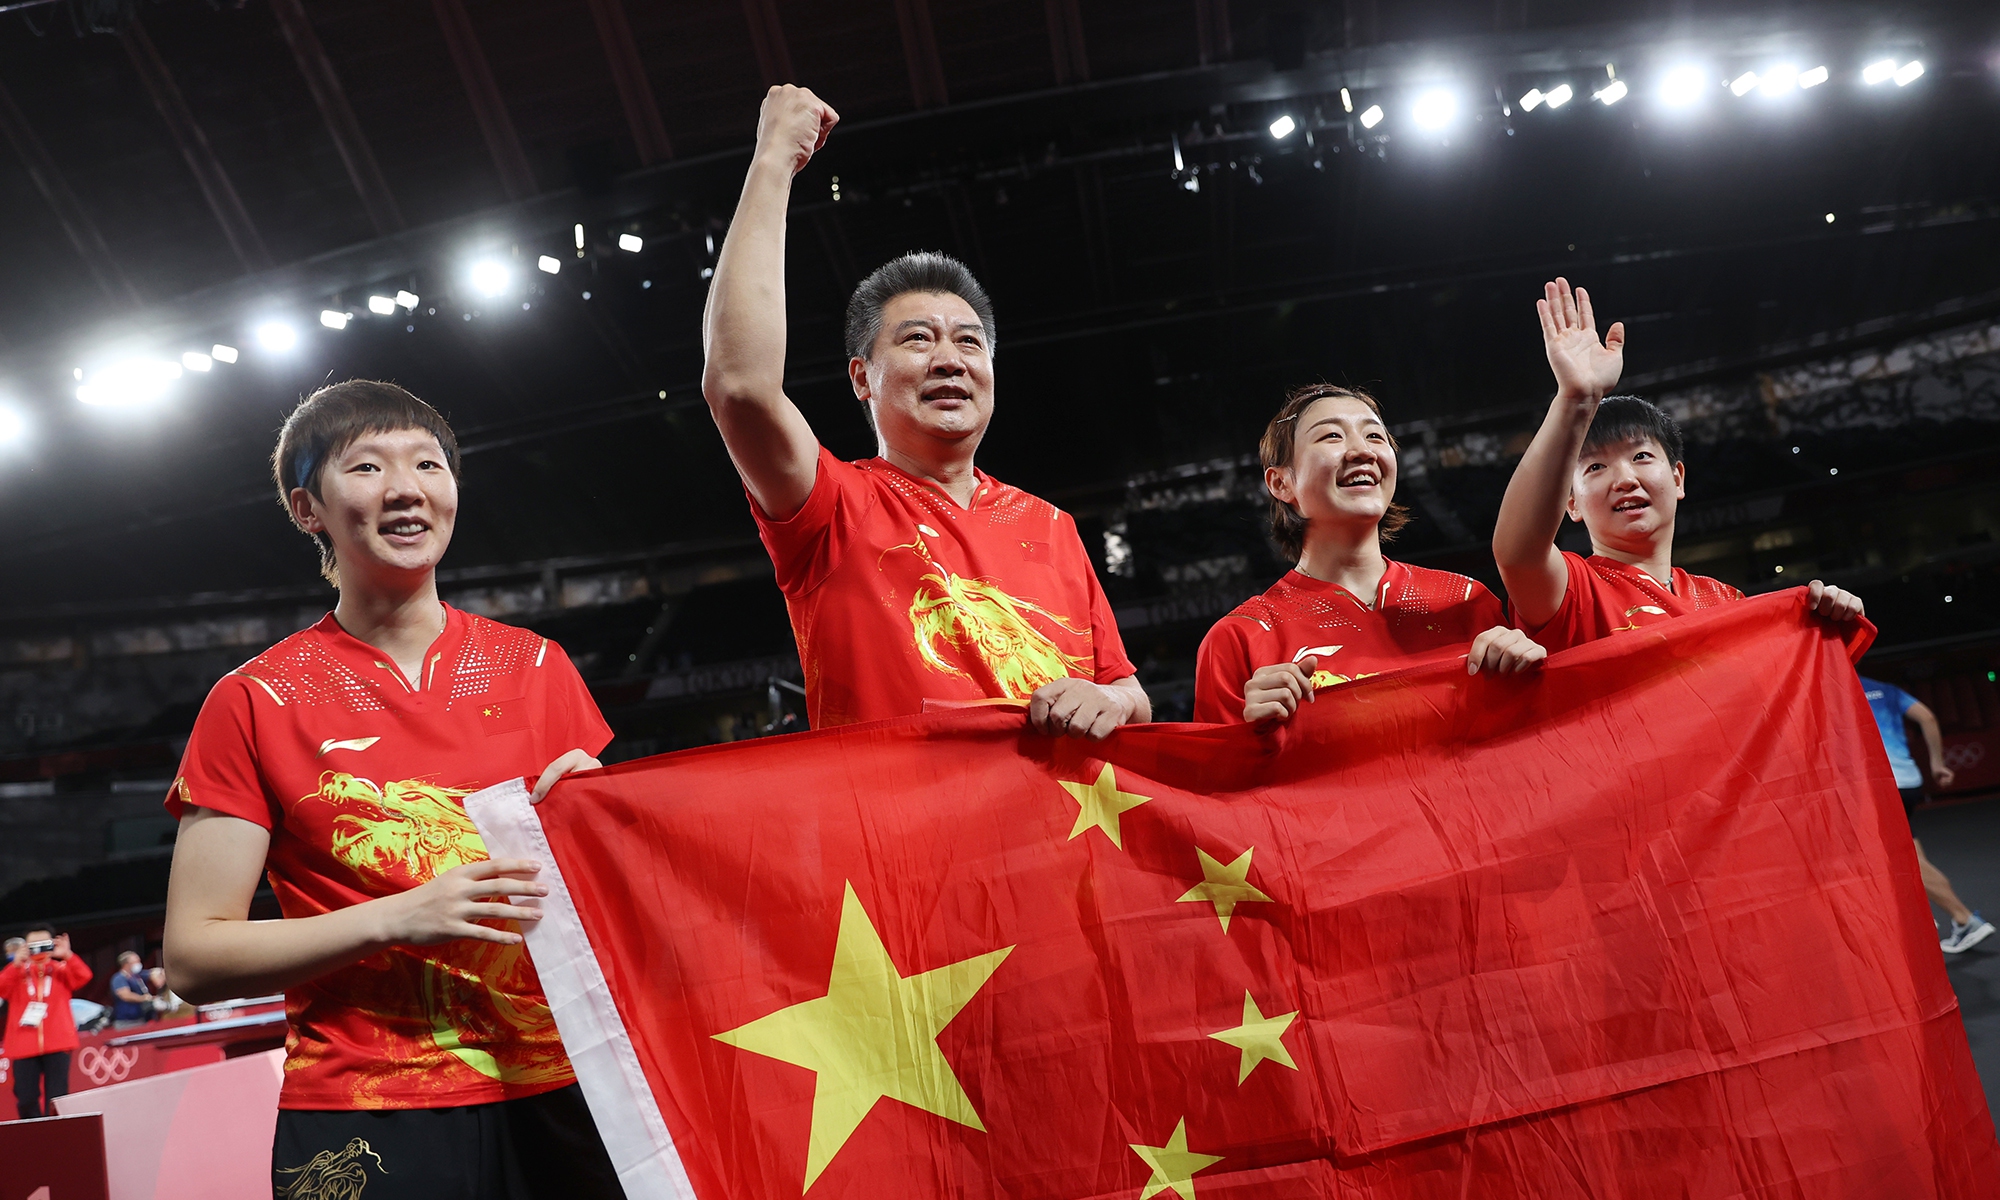 Đội tuyển nữ bóng bàn Trung Quốc đánh bại chủ nhà Nhật Bản với tỷ số 3-0 để giành chiến thắng trong trận chung kết nội dung đồng đội, mang về huy chương vàng thứ 34 cho đoàn thể thao Trung Quốc tại Thế vận hội Tokyo 2020. Ảnh: Global Times.